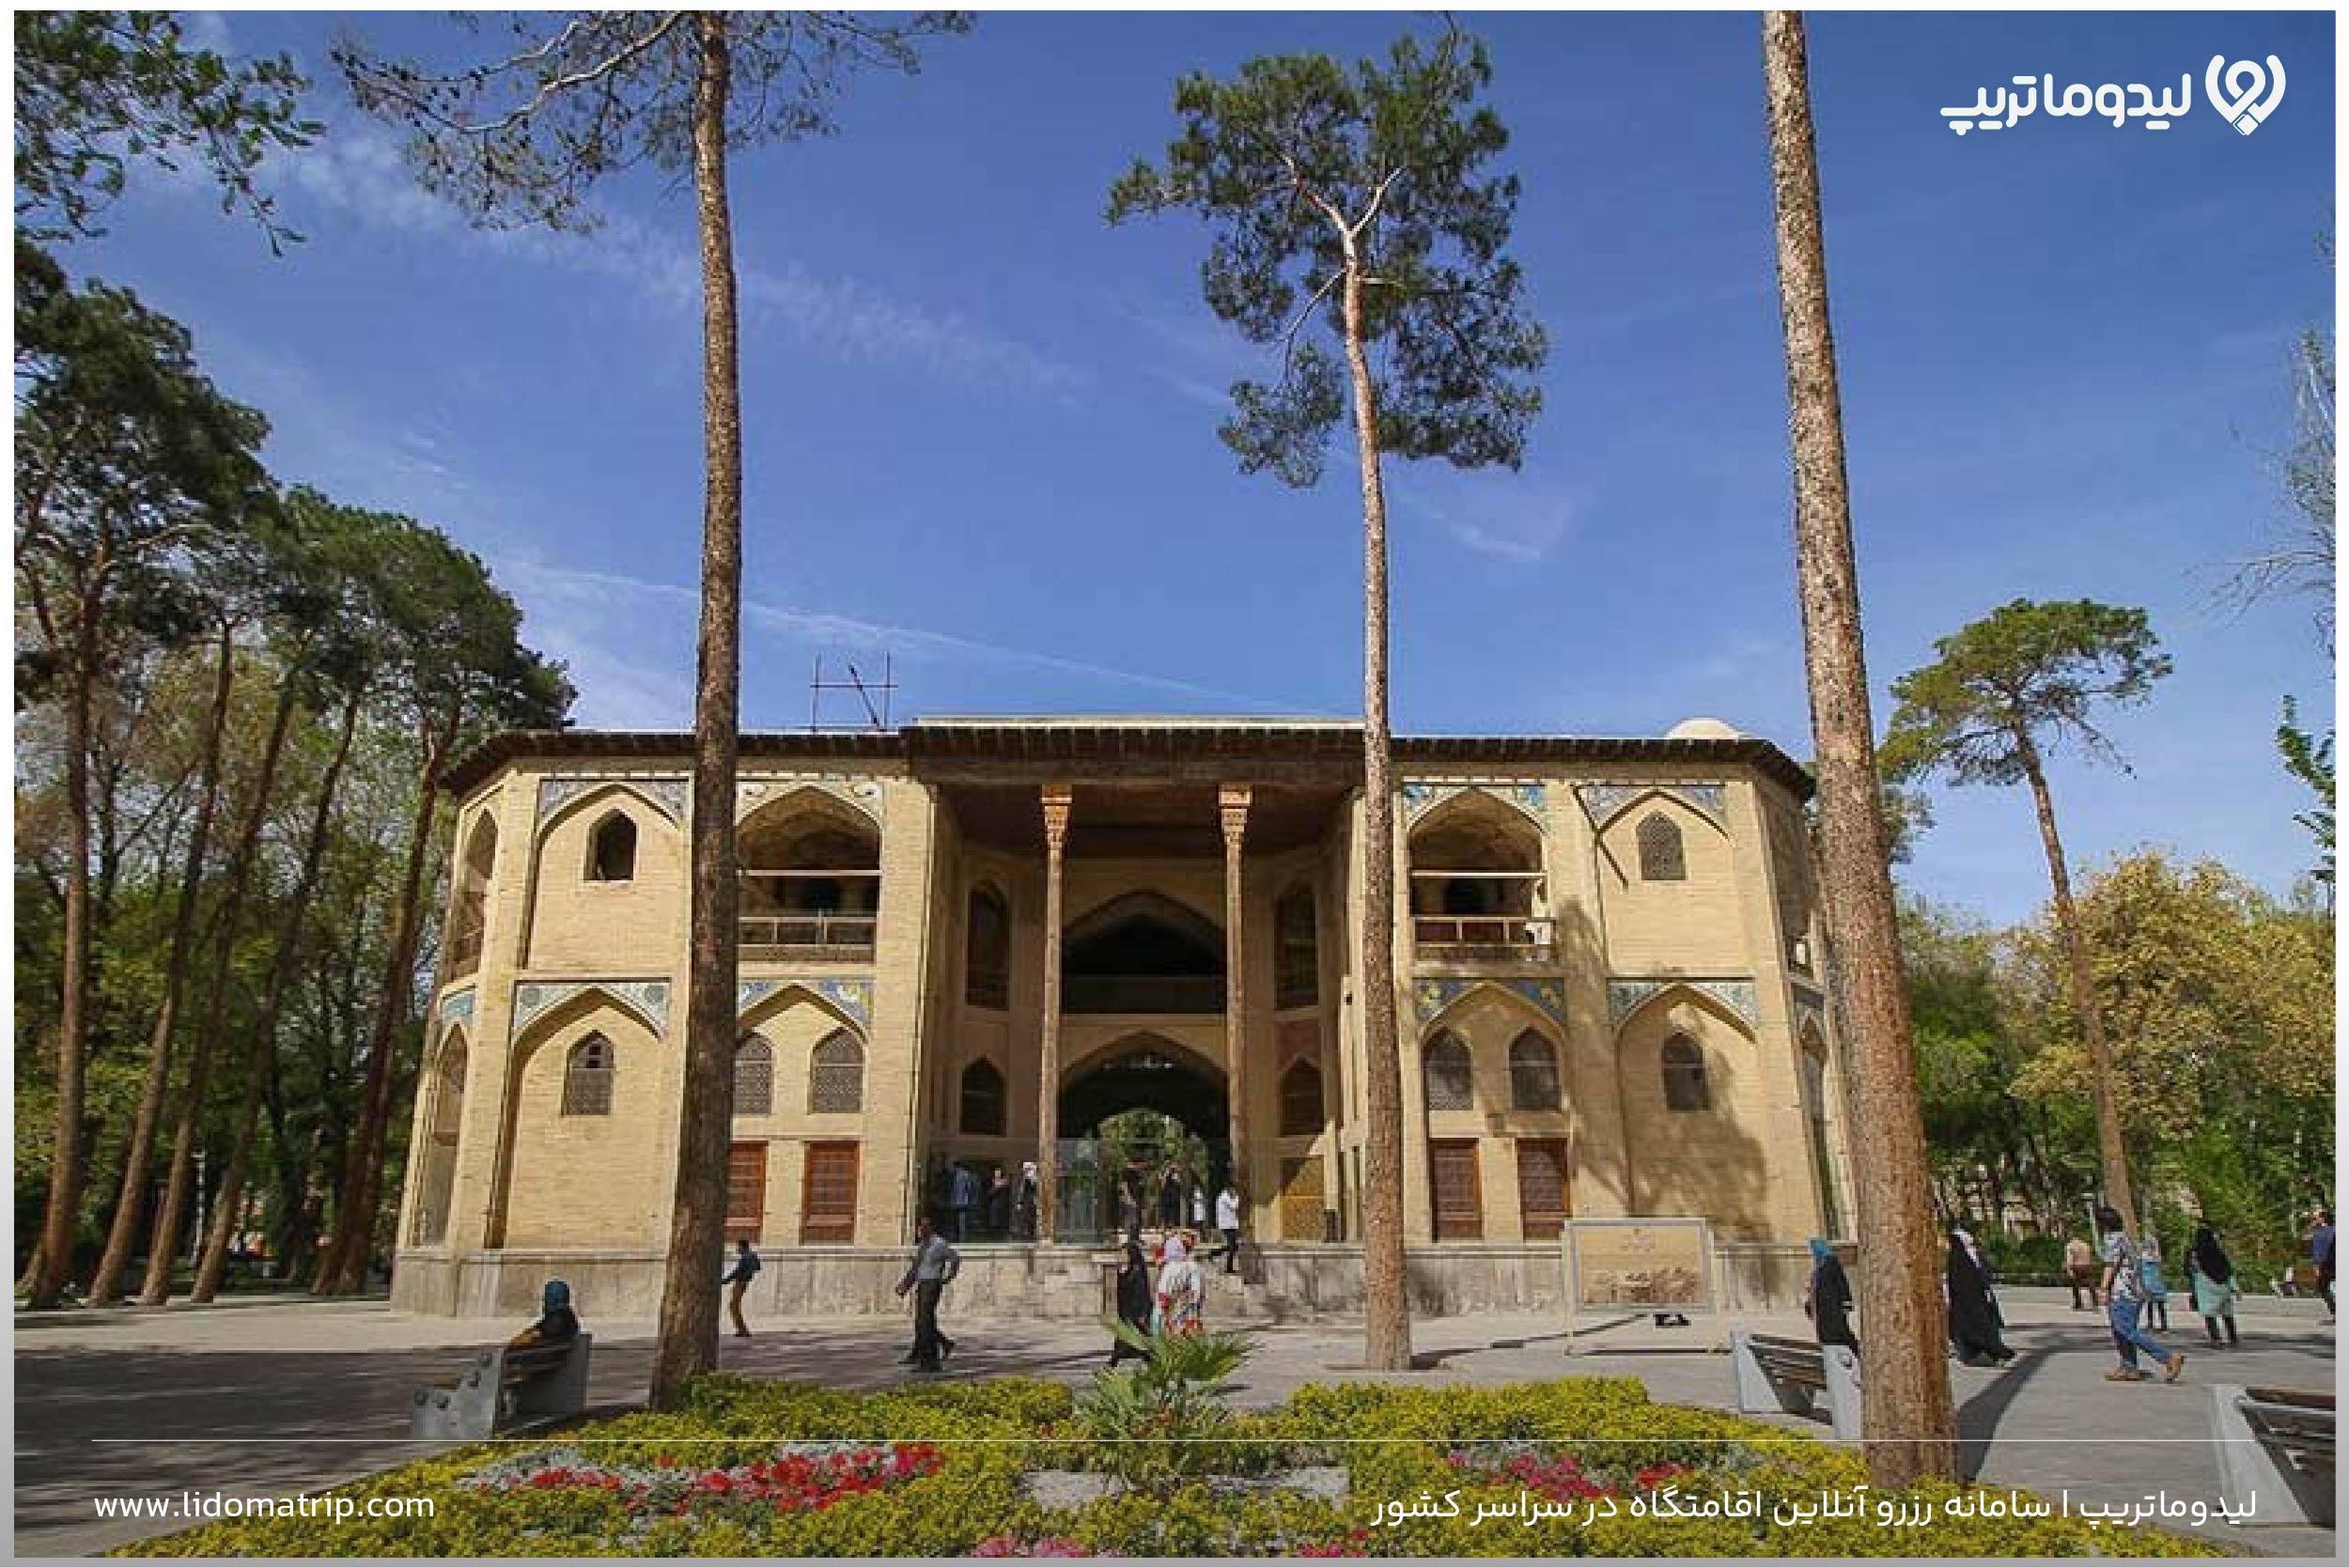 هشت بهشت اصفهان کجاست